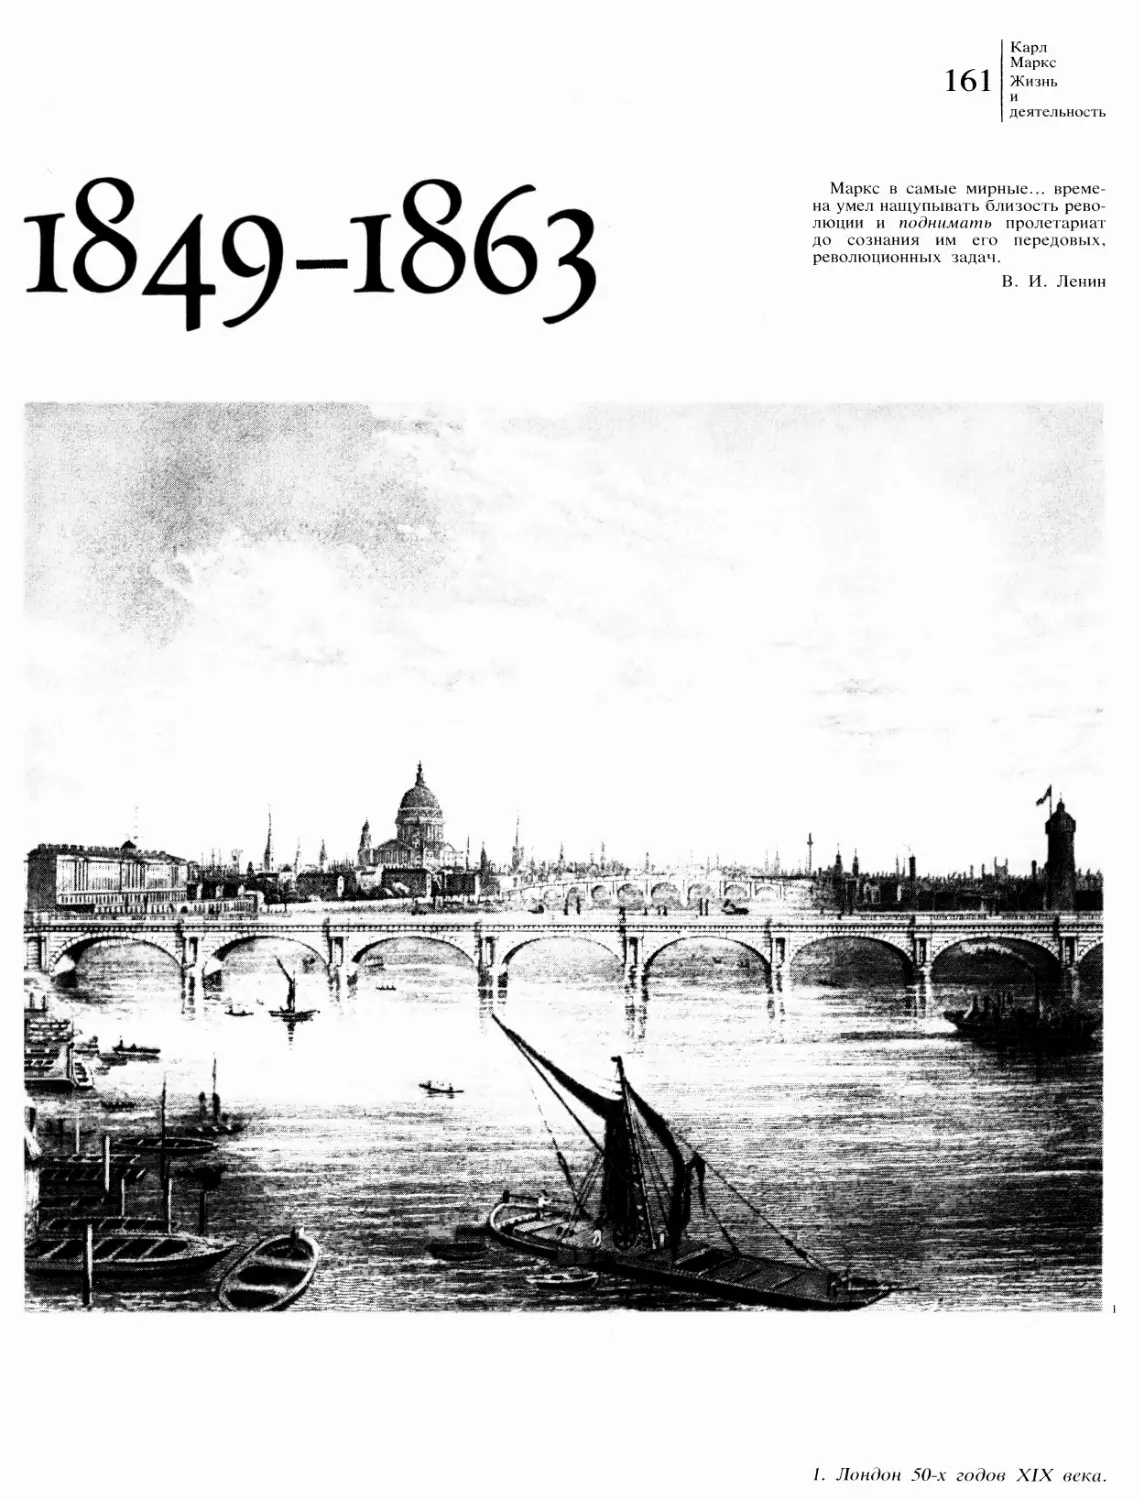 1849—1863